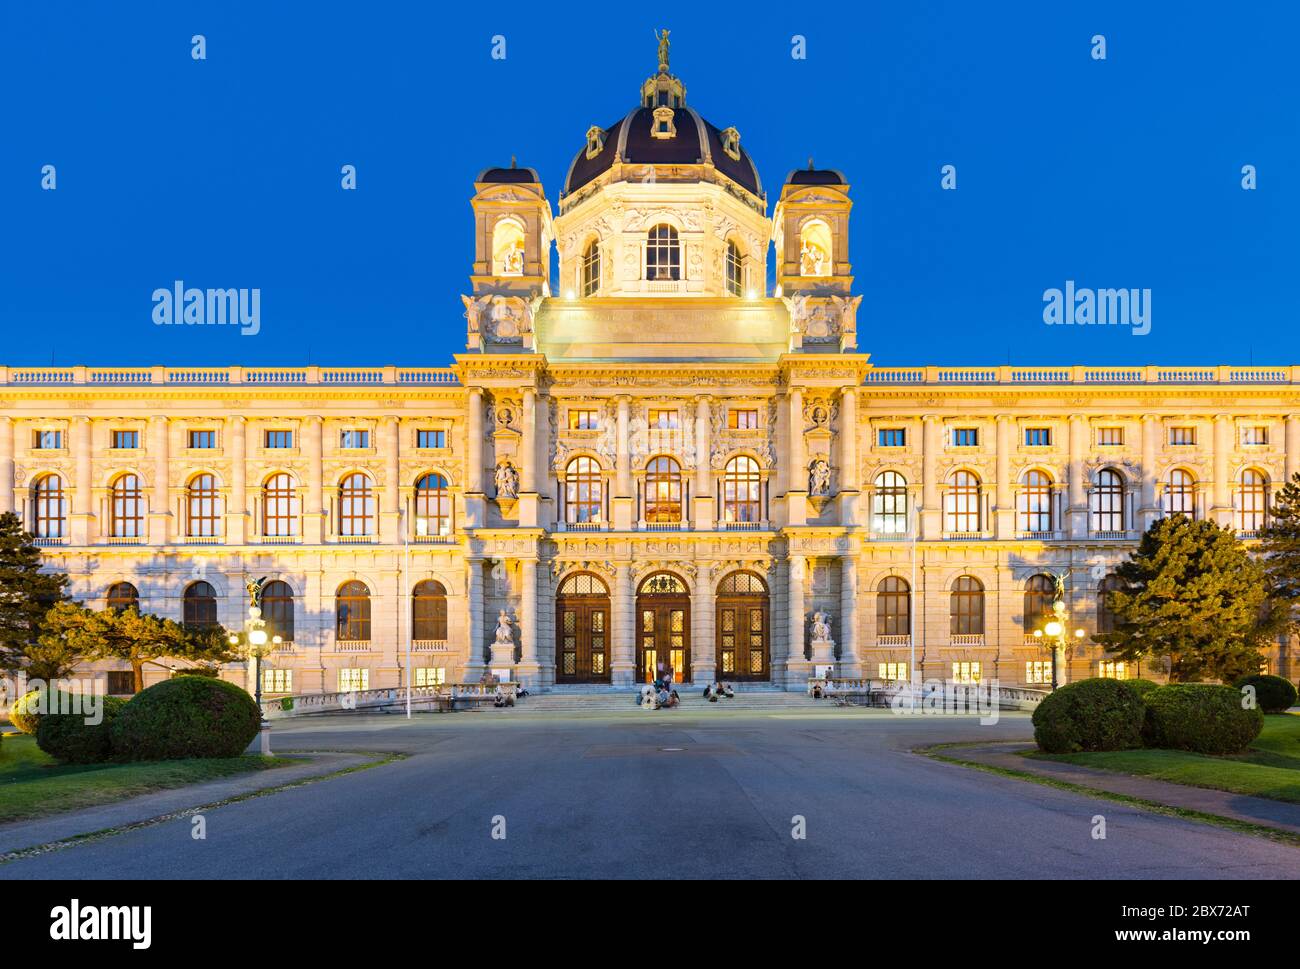 Vue de face du musée Kunsthorisches (musée des Beaux-Arts) de Vienne, Autriche, la nuit. Banque D'Images